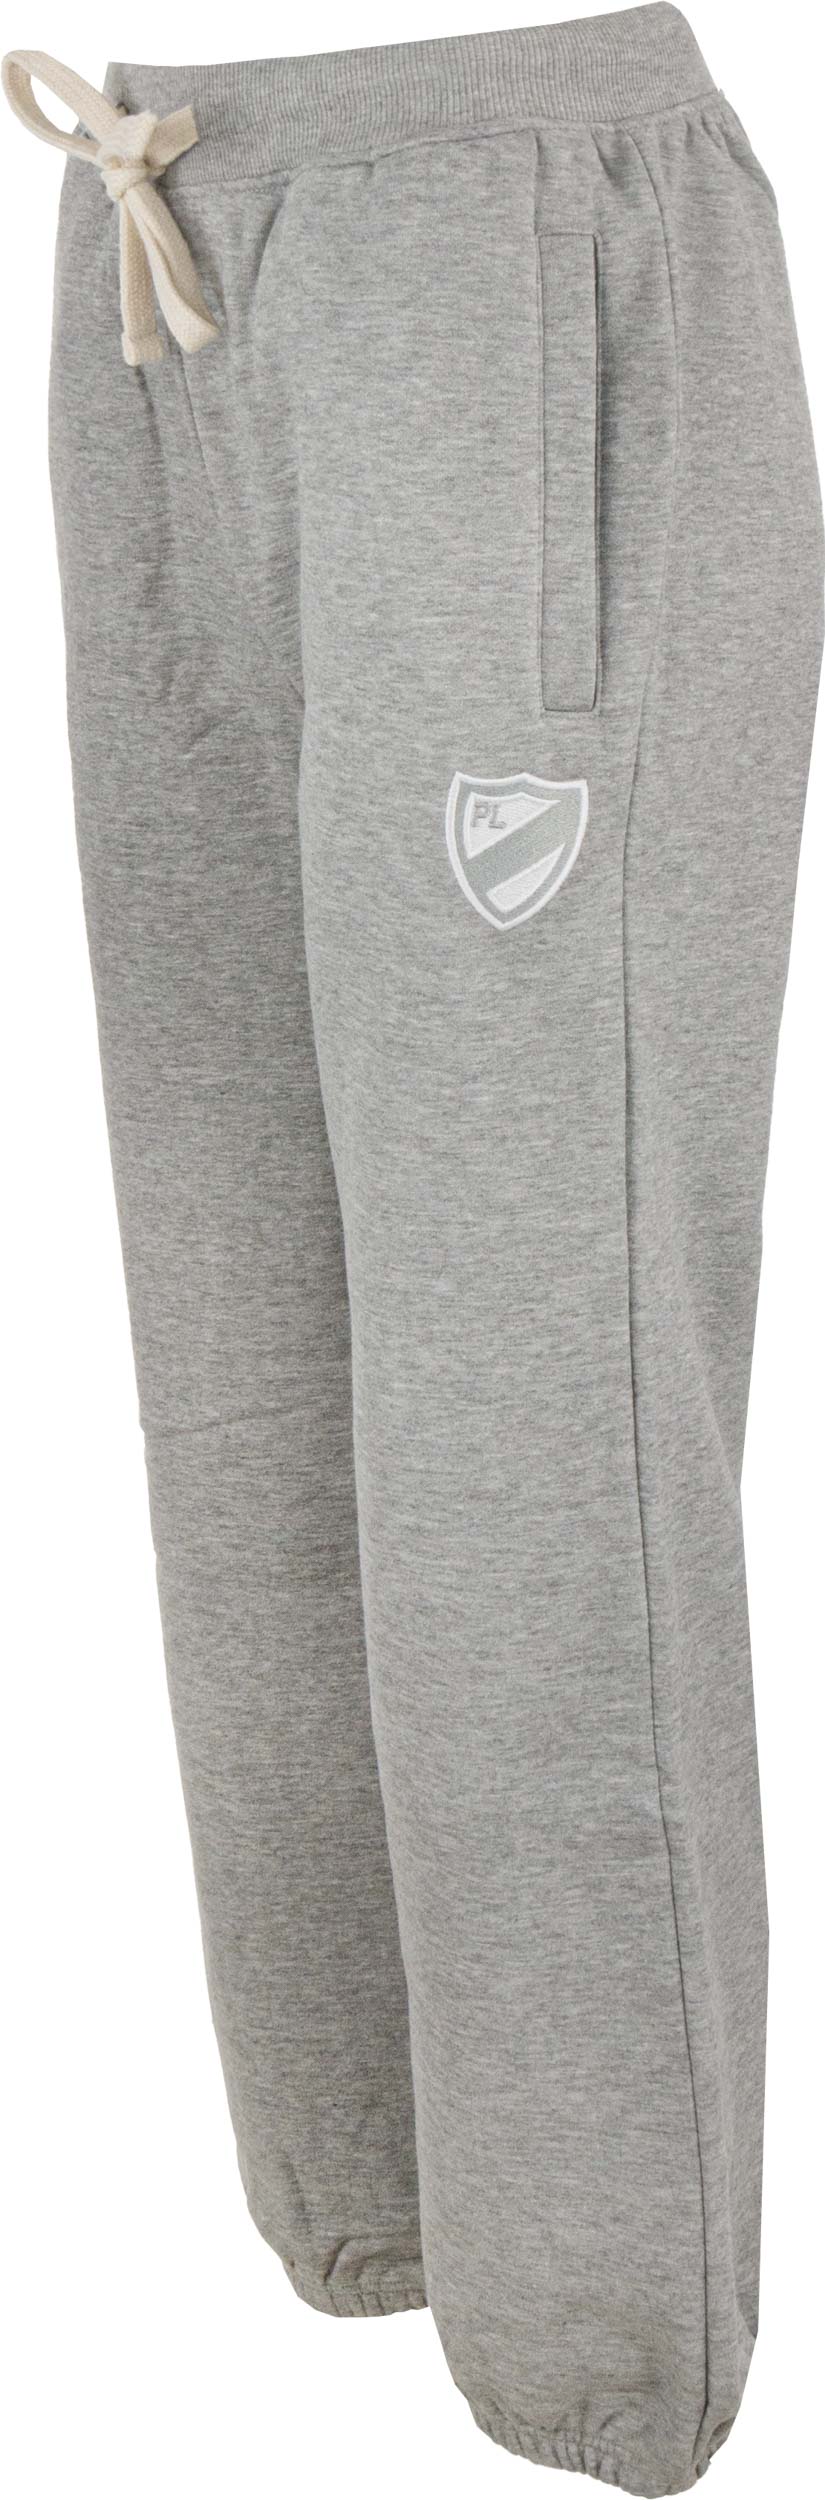 Dámské tepláky PlayerLayer Sweatpant Grey|XL